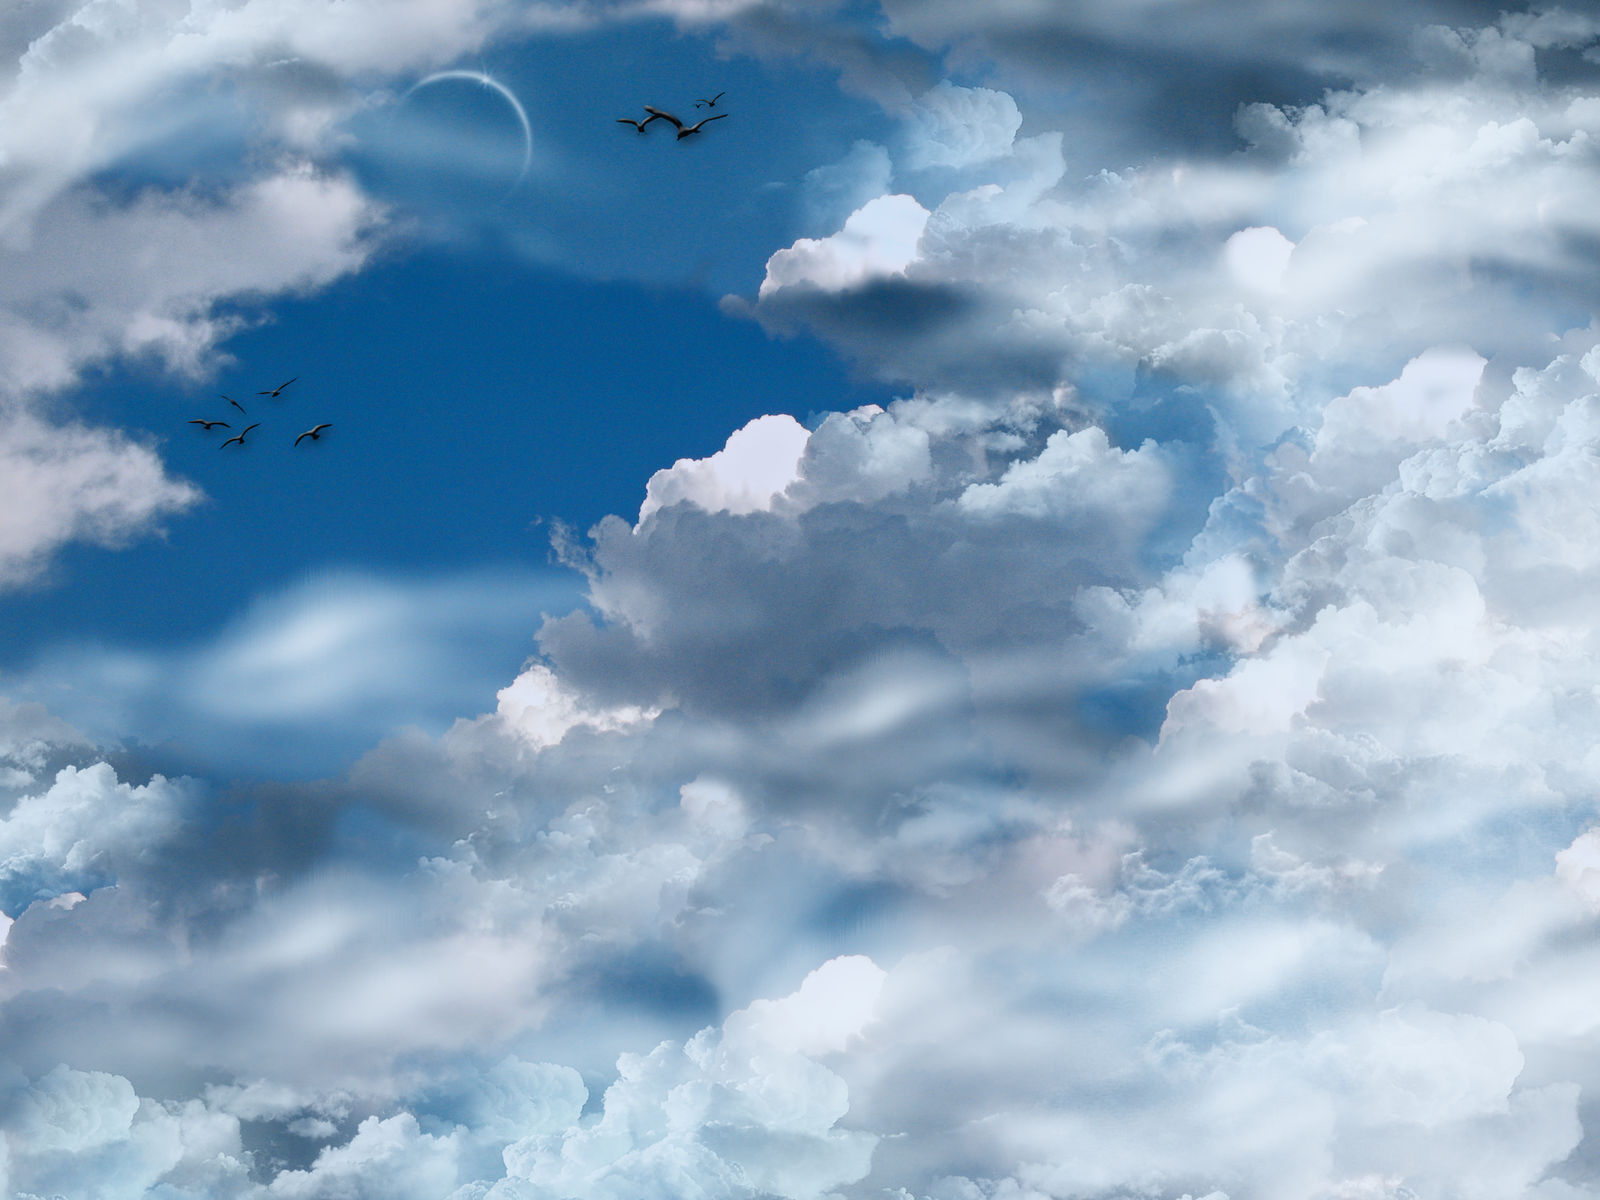 Phông nền mây xanh đục: Những đám mây xanh đục trôi trên nền trời, tạo nên một cảnh tượng rất đẹp và đầy bí ẩn. Với phông nền mây xanh đục, bạn có thể tạo ra được những bức ảnh độc đáo và ấn tượng nhất. Hãy chiêm ngưỡng những hình ảnh tuyệt vời này để cùng tạo ra những tác phẩm nghệ thuật của riêng bạn.